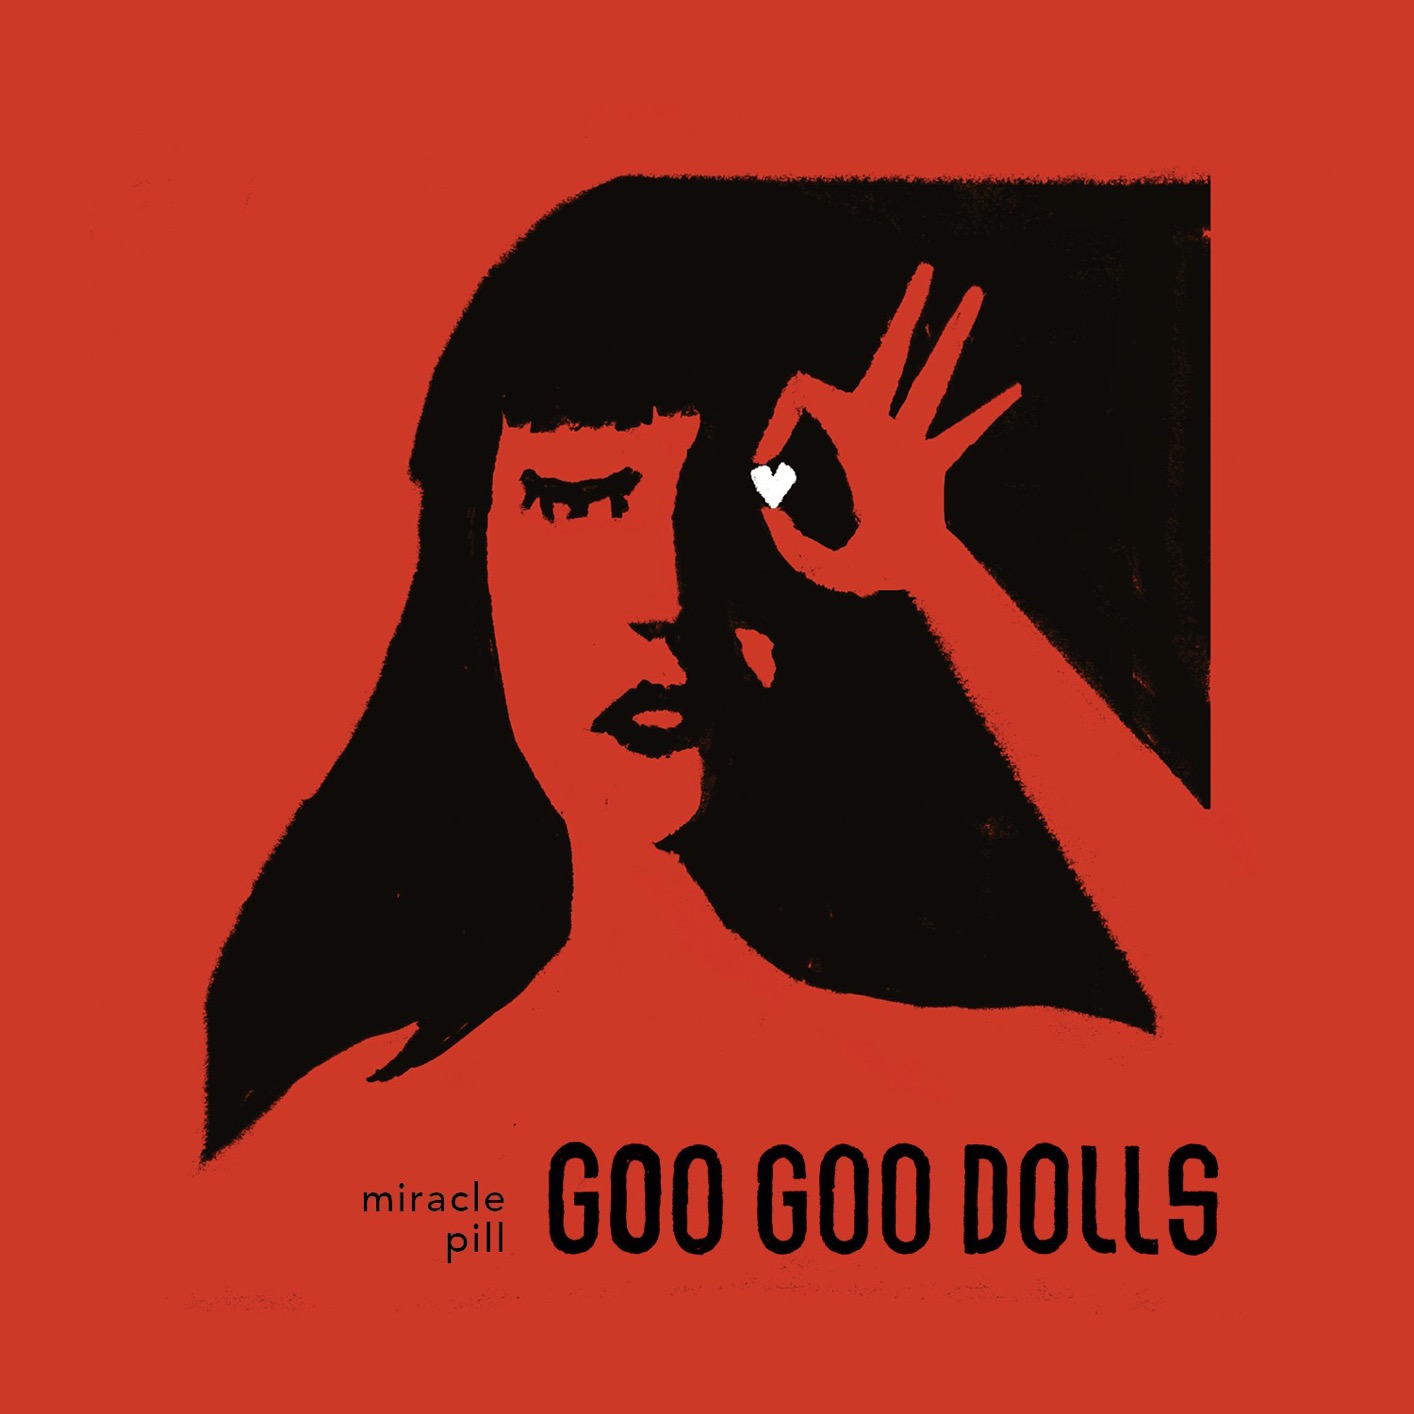 Goo Goo Dolls - Miracle Pill (2019) [FLAC 24bit/48kHz]